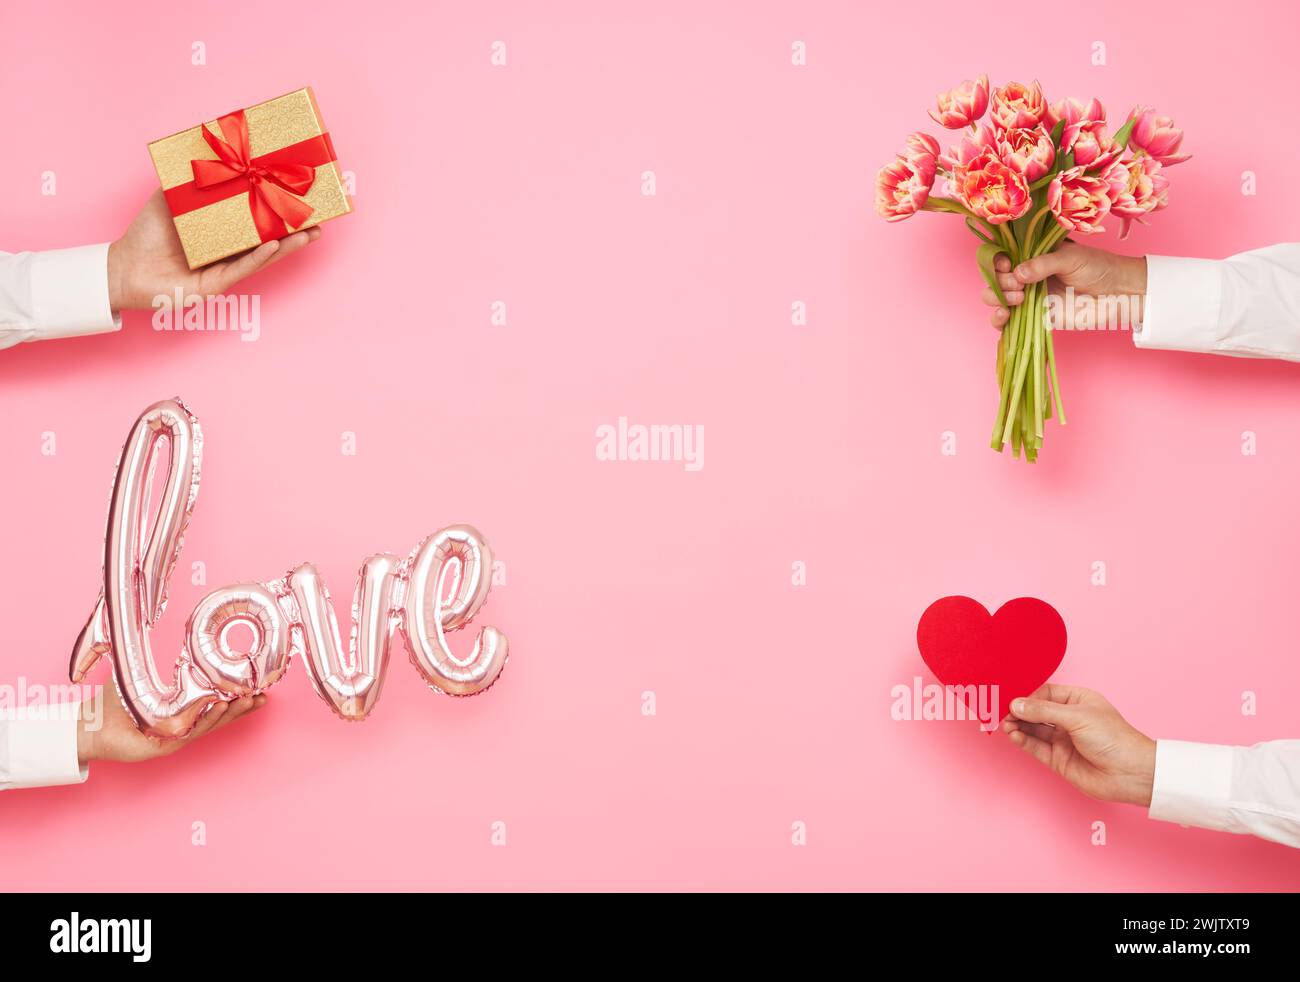 Mains d'homme avec la forme de ballon de l'amour, bouquet de tulipes, coeur de papier et boîte cadeau sur fond rose. Journée internationale de la femme, Saint-Valentin Banque D'Images